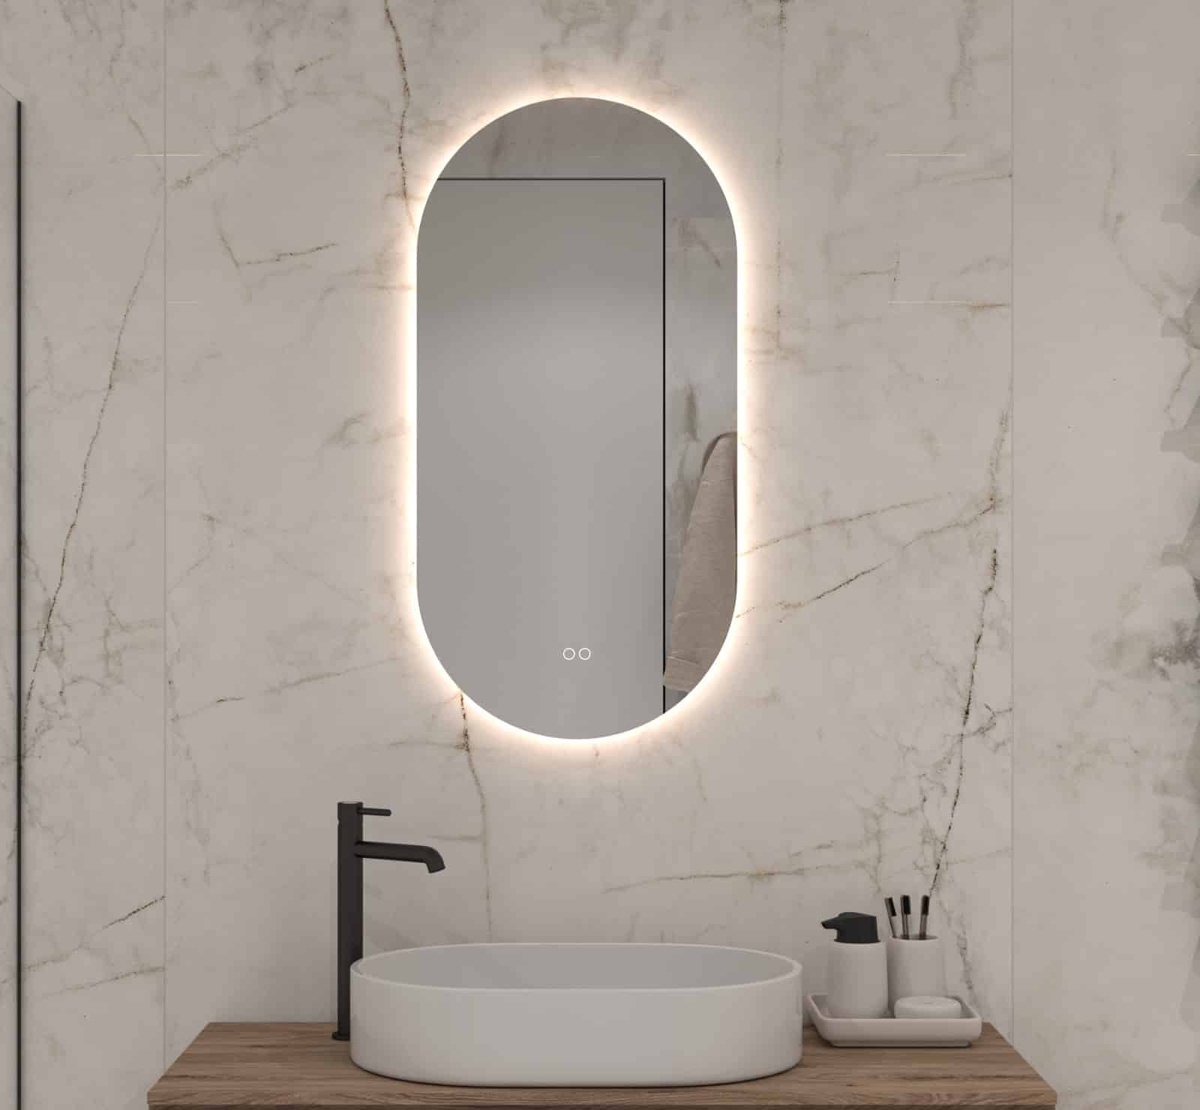 Ovale badkamerspiegel met indirecte verlichting, verwarming, instelbare lichtkleur en dimfunctie 45x90 cm